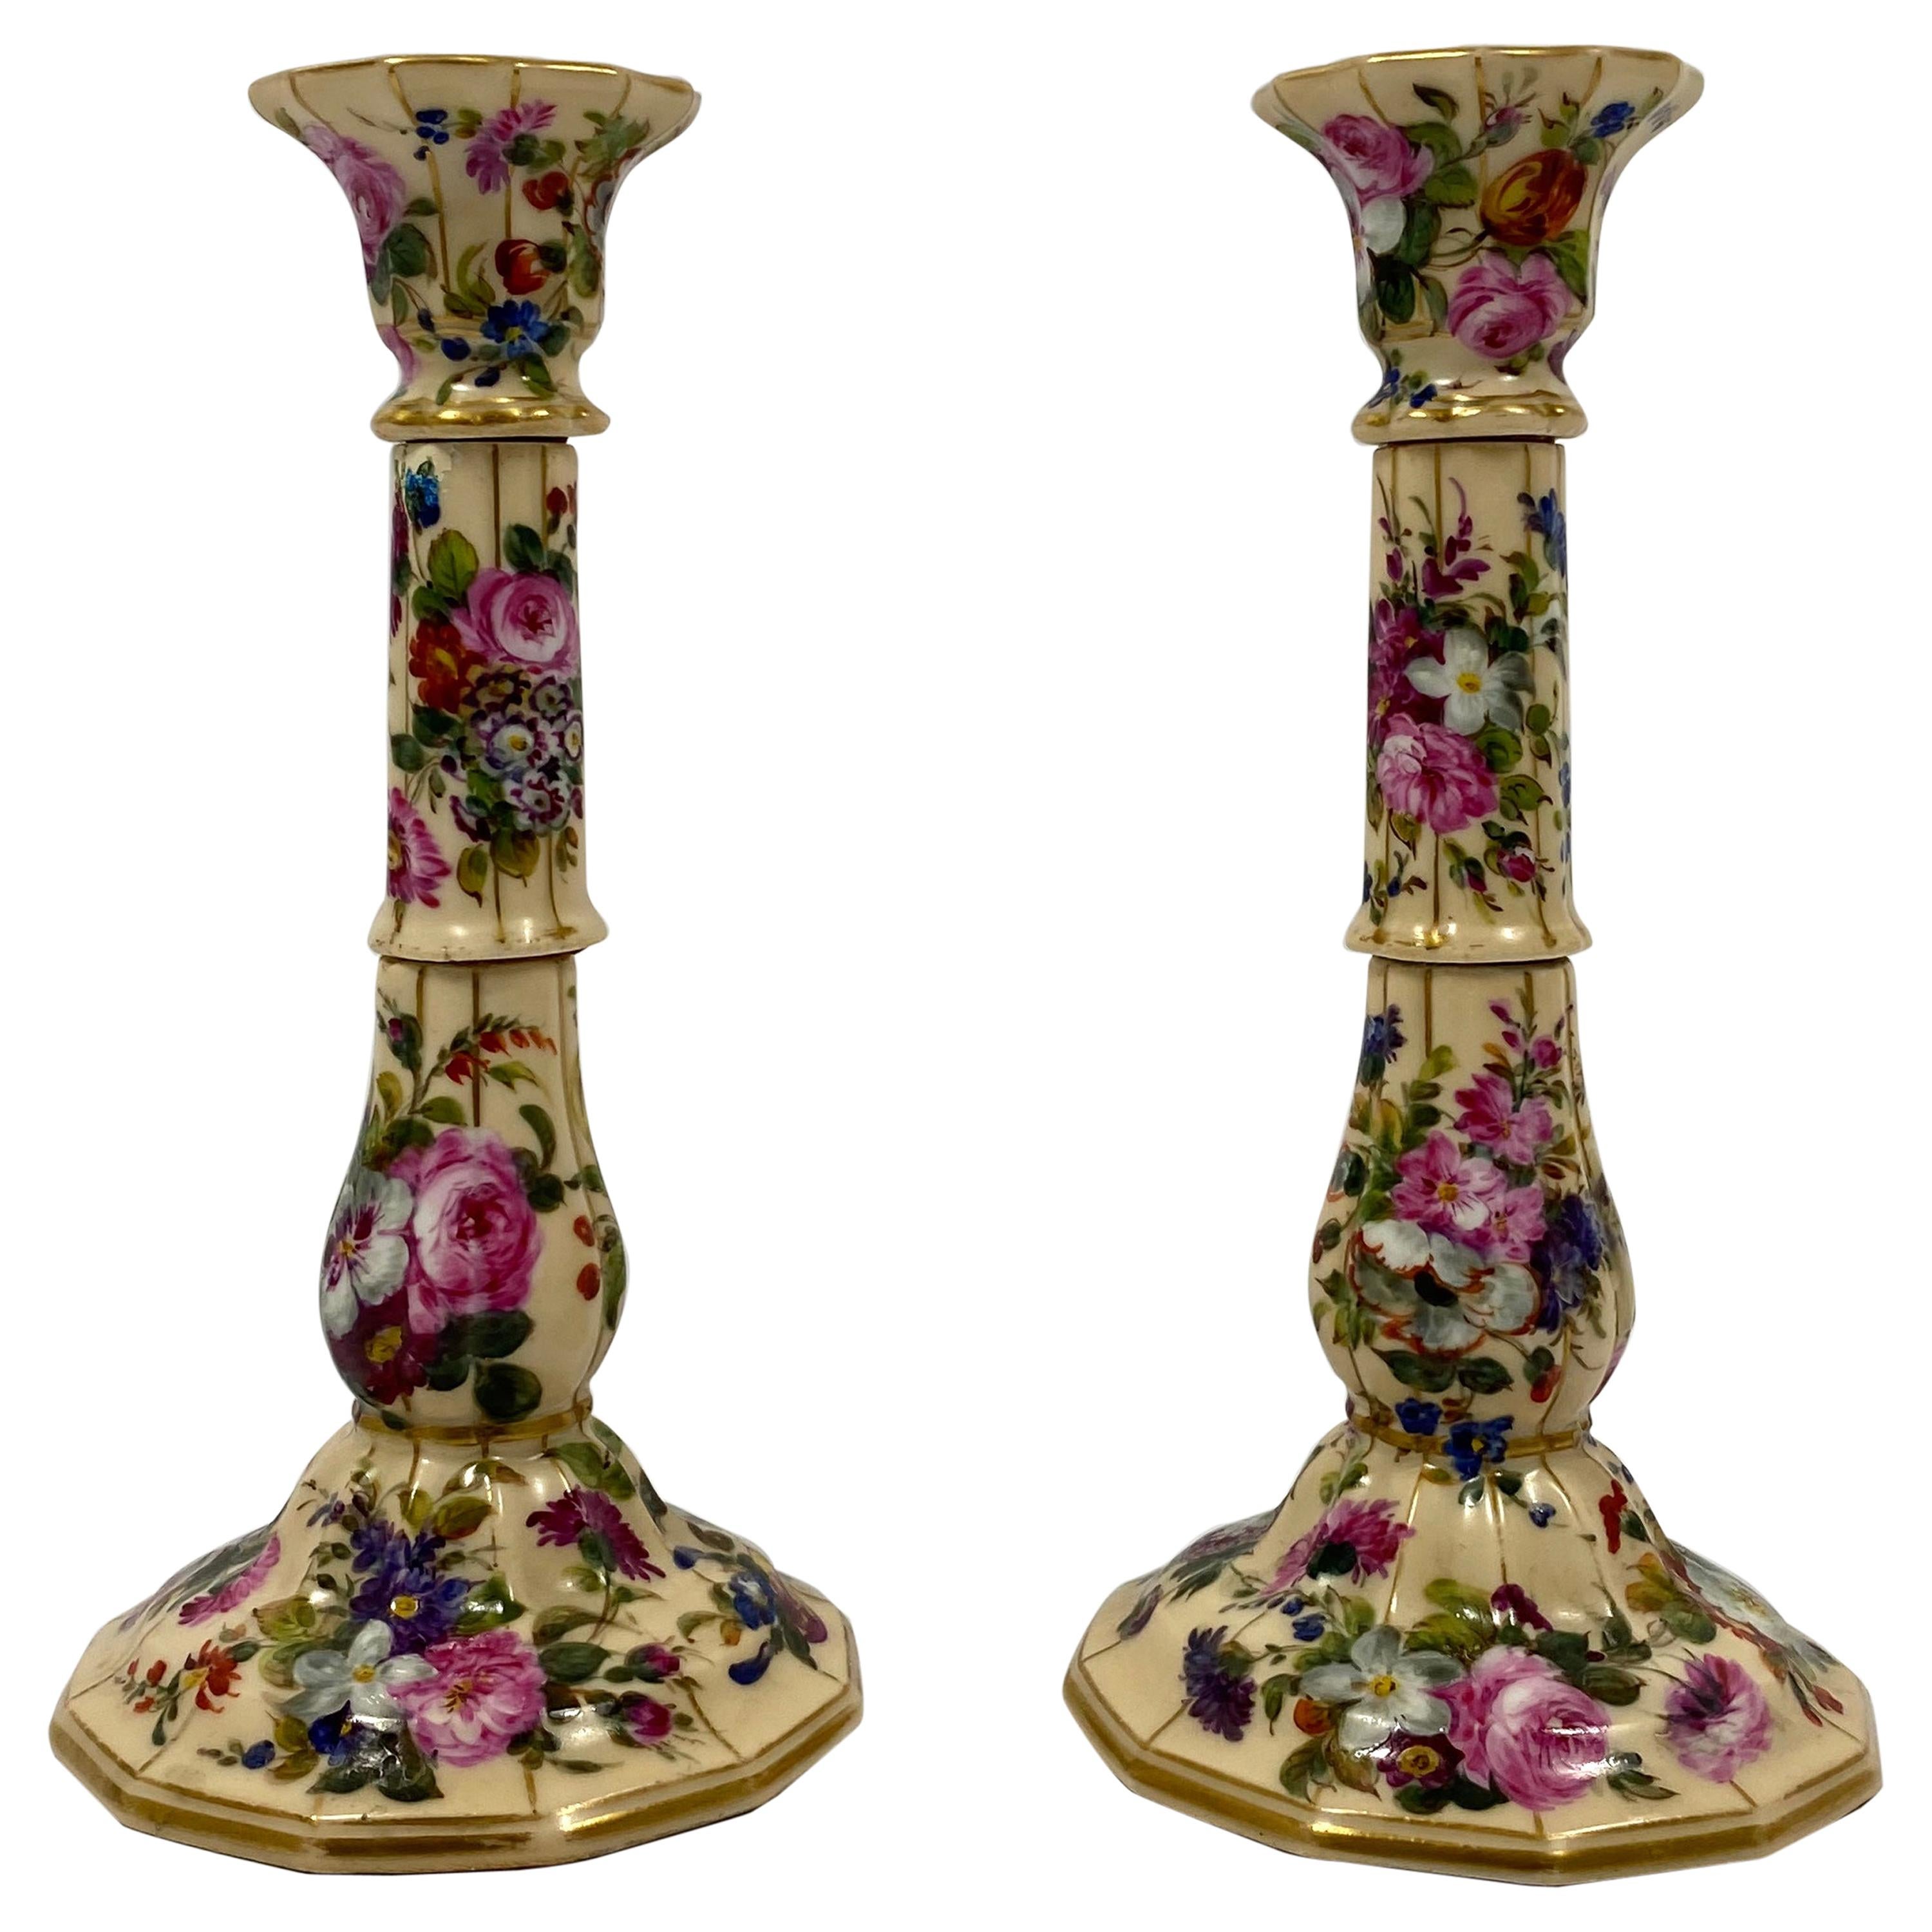 Pair of Paris Porcelain Candlesticks, Jacob Petit, circa 1840